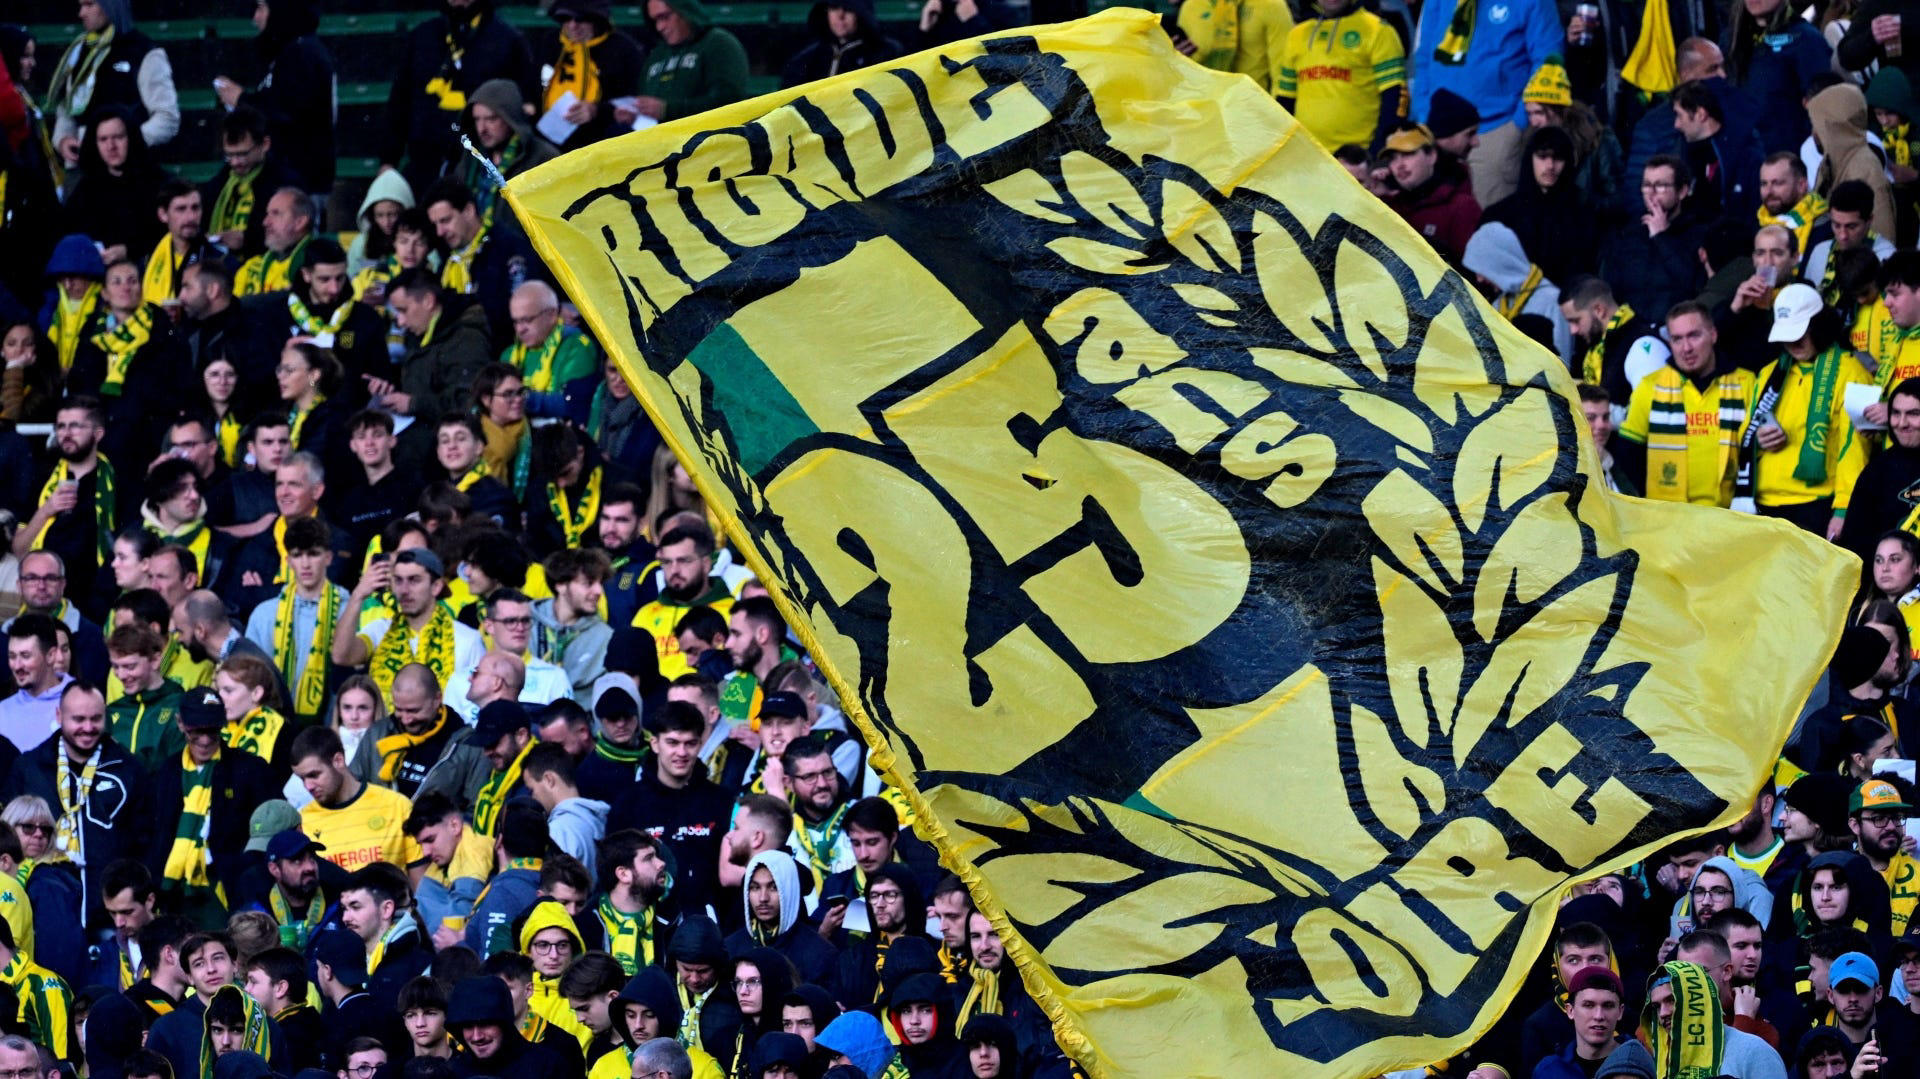 FC Nantes : Des supporters ouvrent une boutique en ligne en